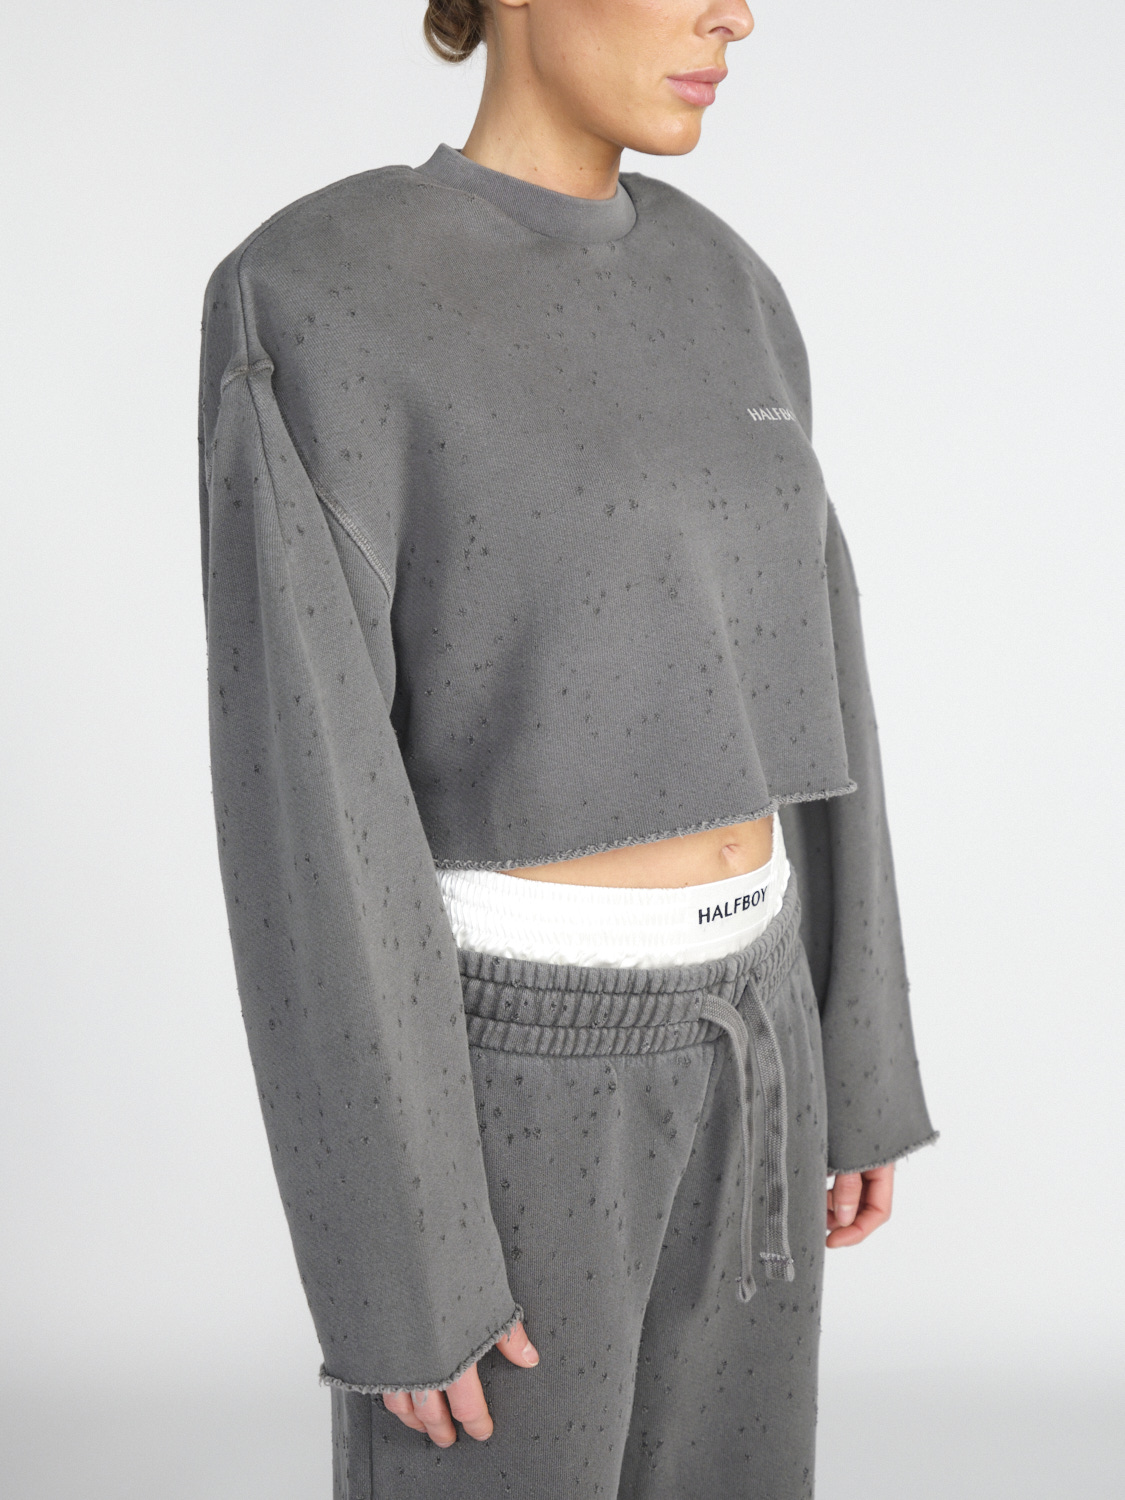 Halfboy Crew Neck – Cropped Pullover mit Schulterpolstern   schwarz XS